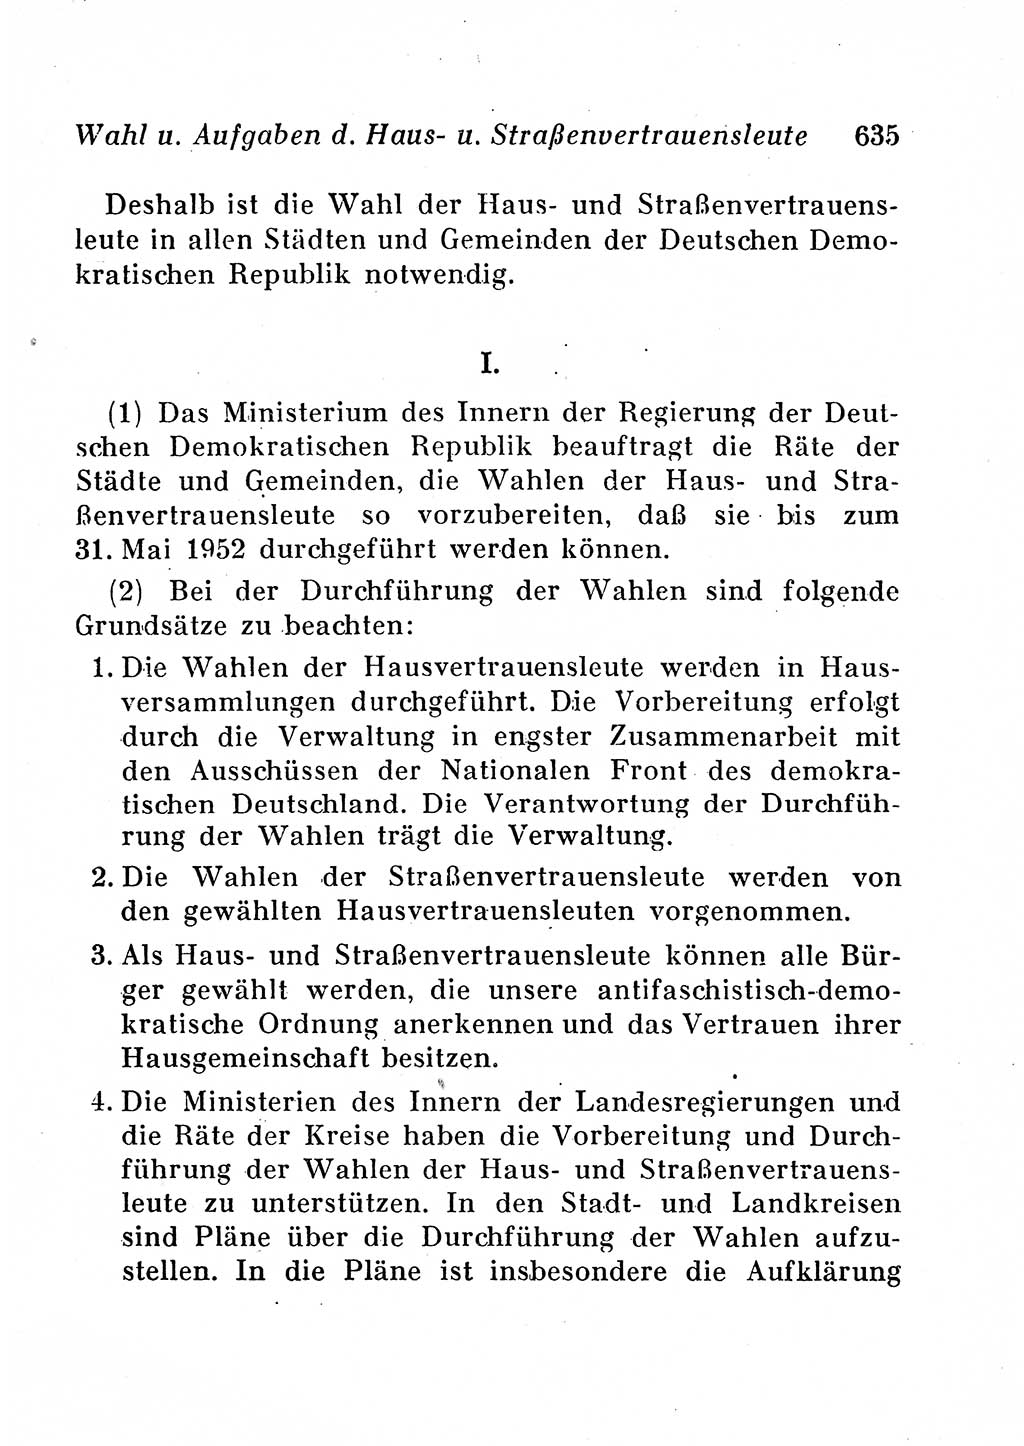 Staats- und verwaltungsrechtliche Gesetze der Deutschen Demokratischen Republik (DDR) 1958, Seite 635 (StVerwR Ges. DDR 1958, S. 635)